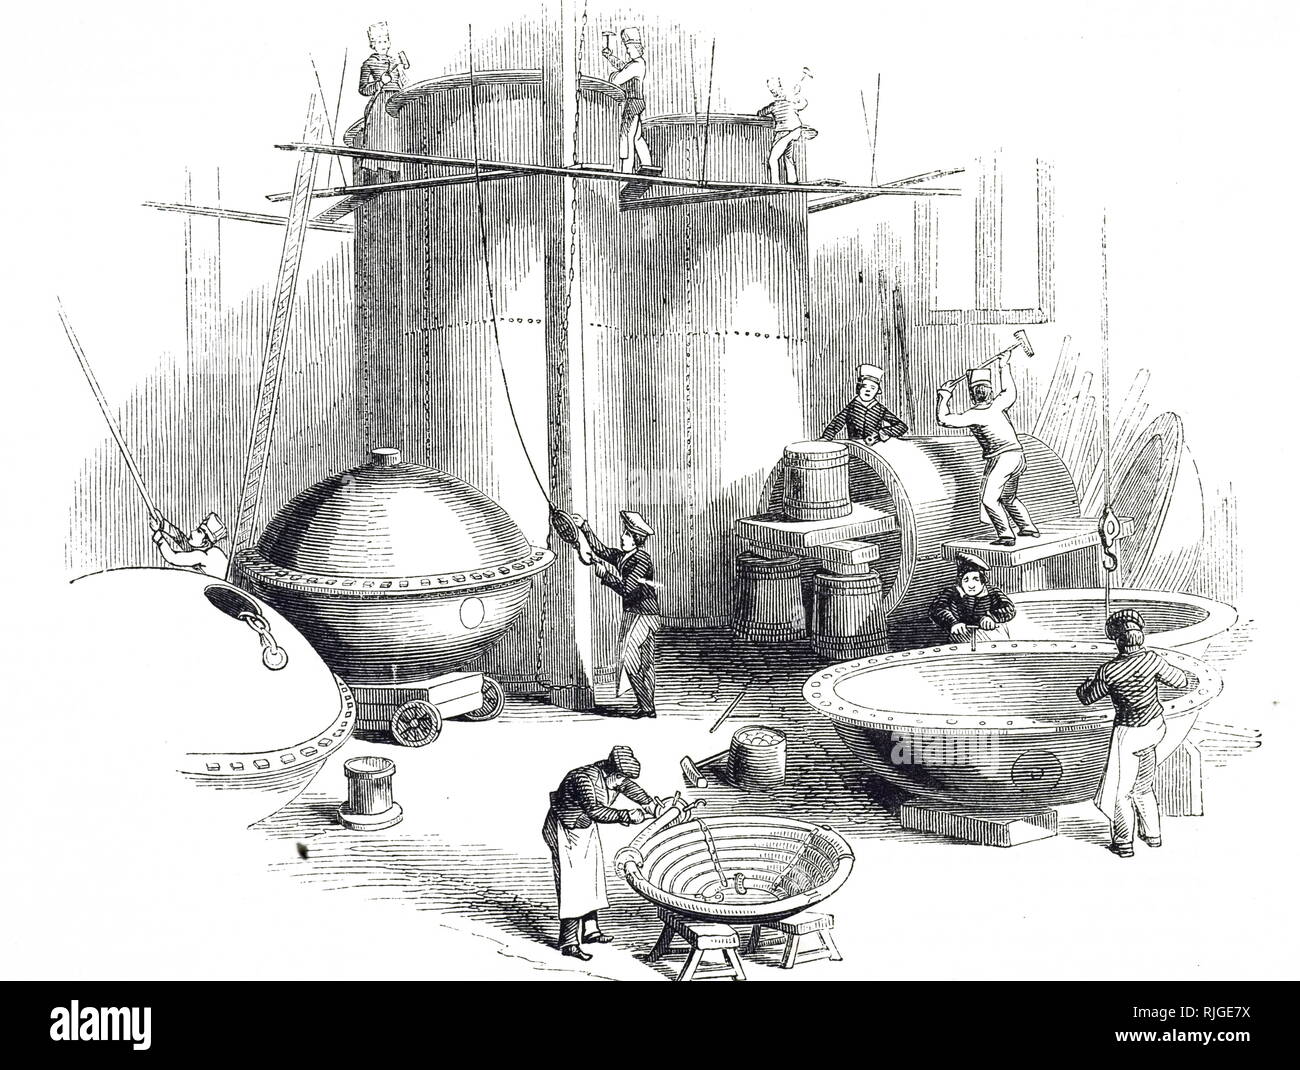 Eine Gravur der Darstellung der Schmied, Shop, Herren E.&W. Pontifex's Factory, Schuhputzmaschine Lane, London. Dieses Werk ist spezialisiert auf die Produktion von Schiffen für die Zuckerfabriken, Brauereien und Brennereien. Vom 19. Jahrhundert Stockfoto